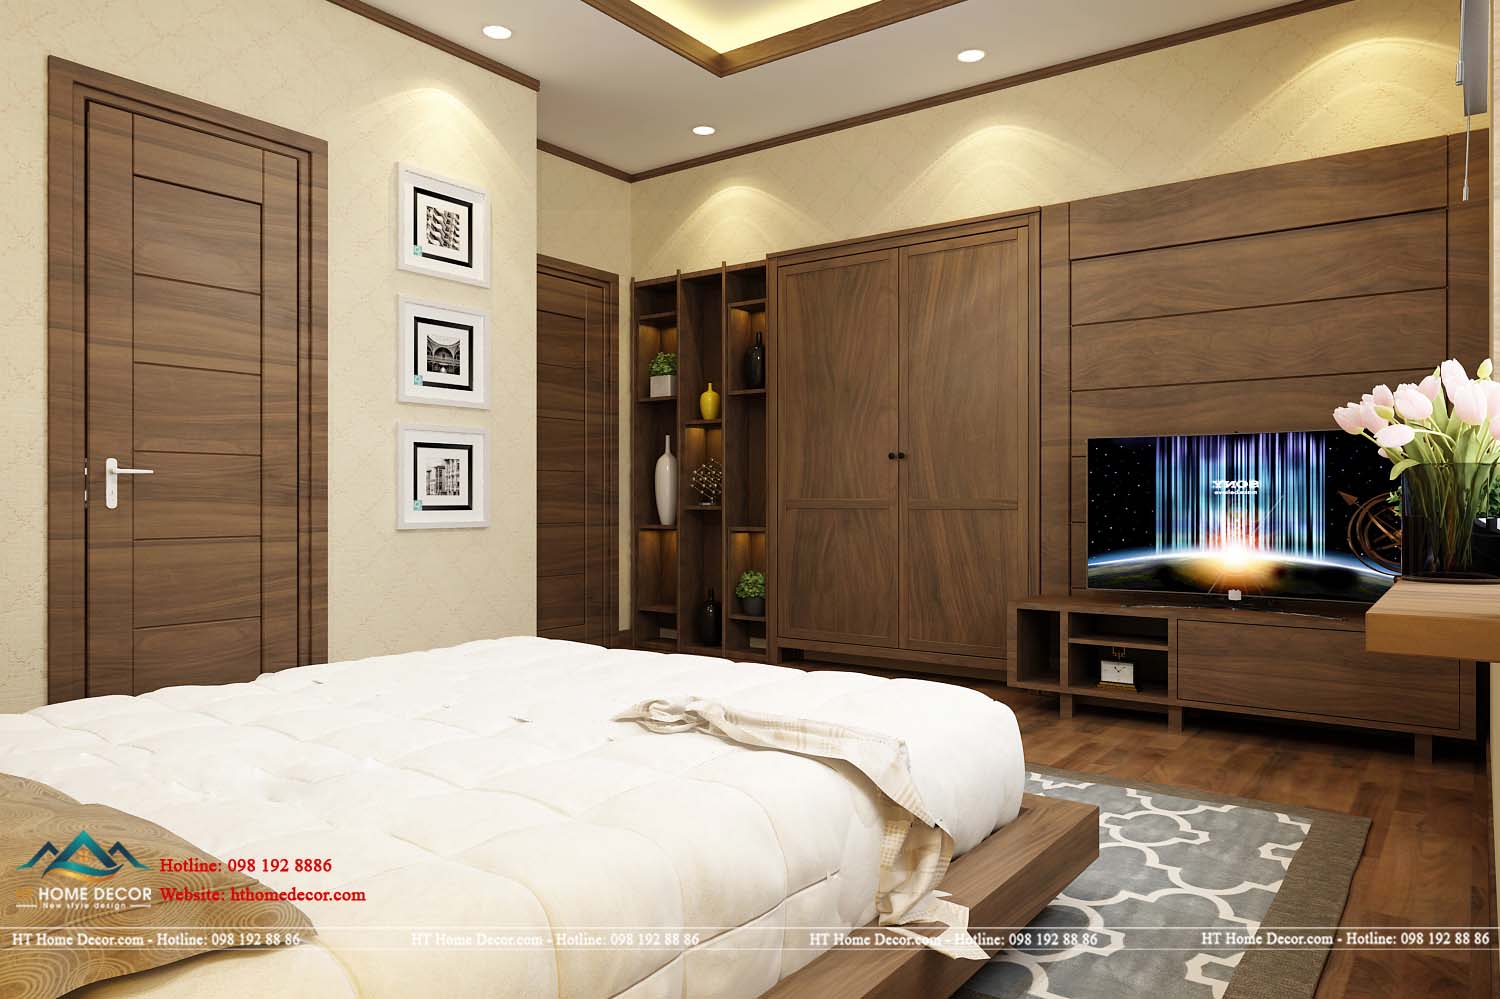 Lấy gam màu chủ đạo của căn phòng là gam màu trắng và màu nâu của gỗ, tạo nên sự sang trọng và hiện đại.